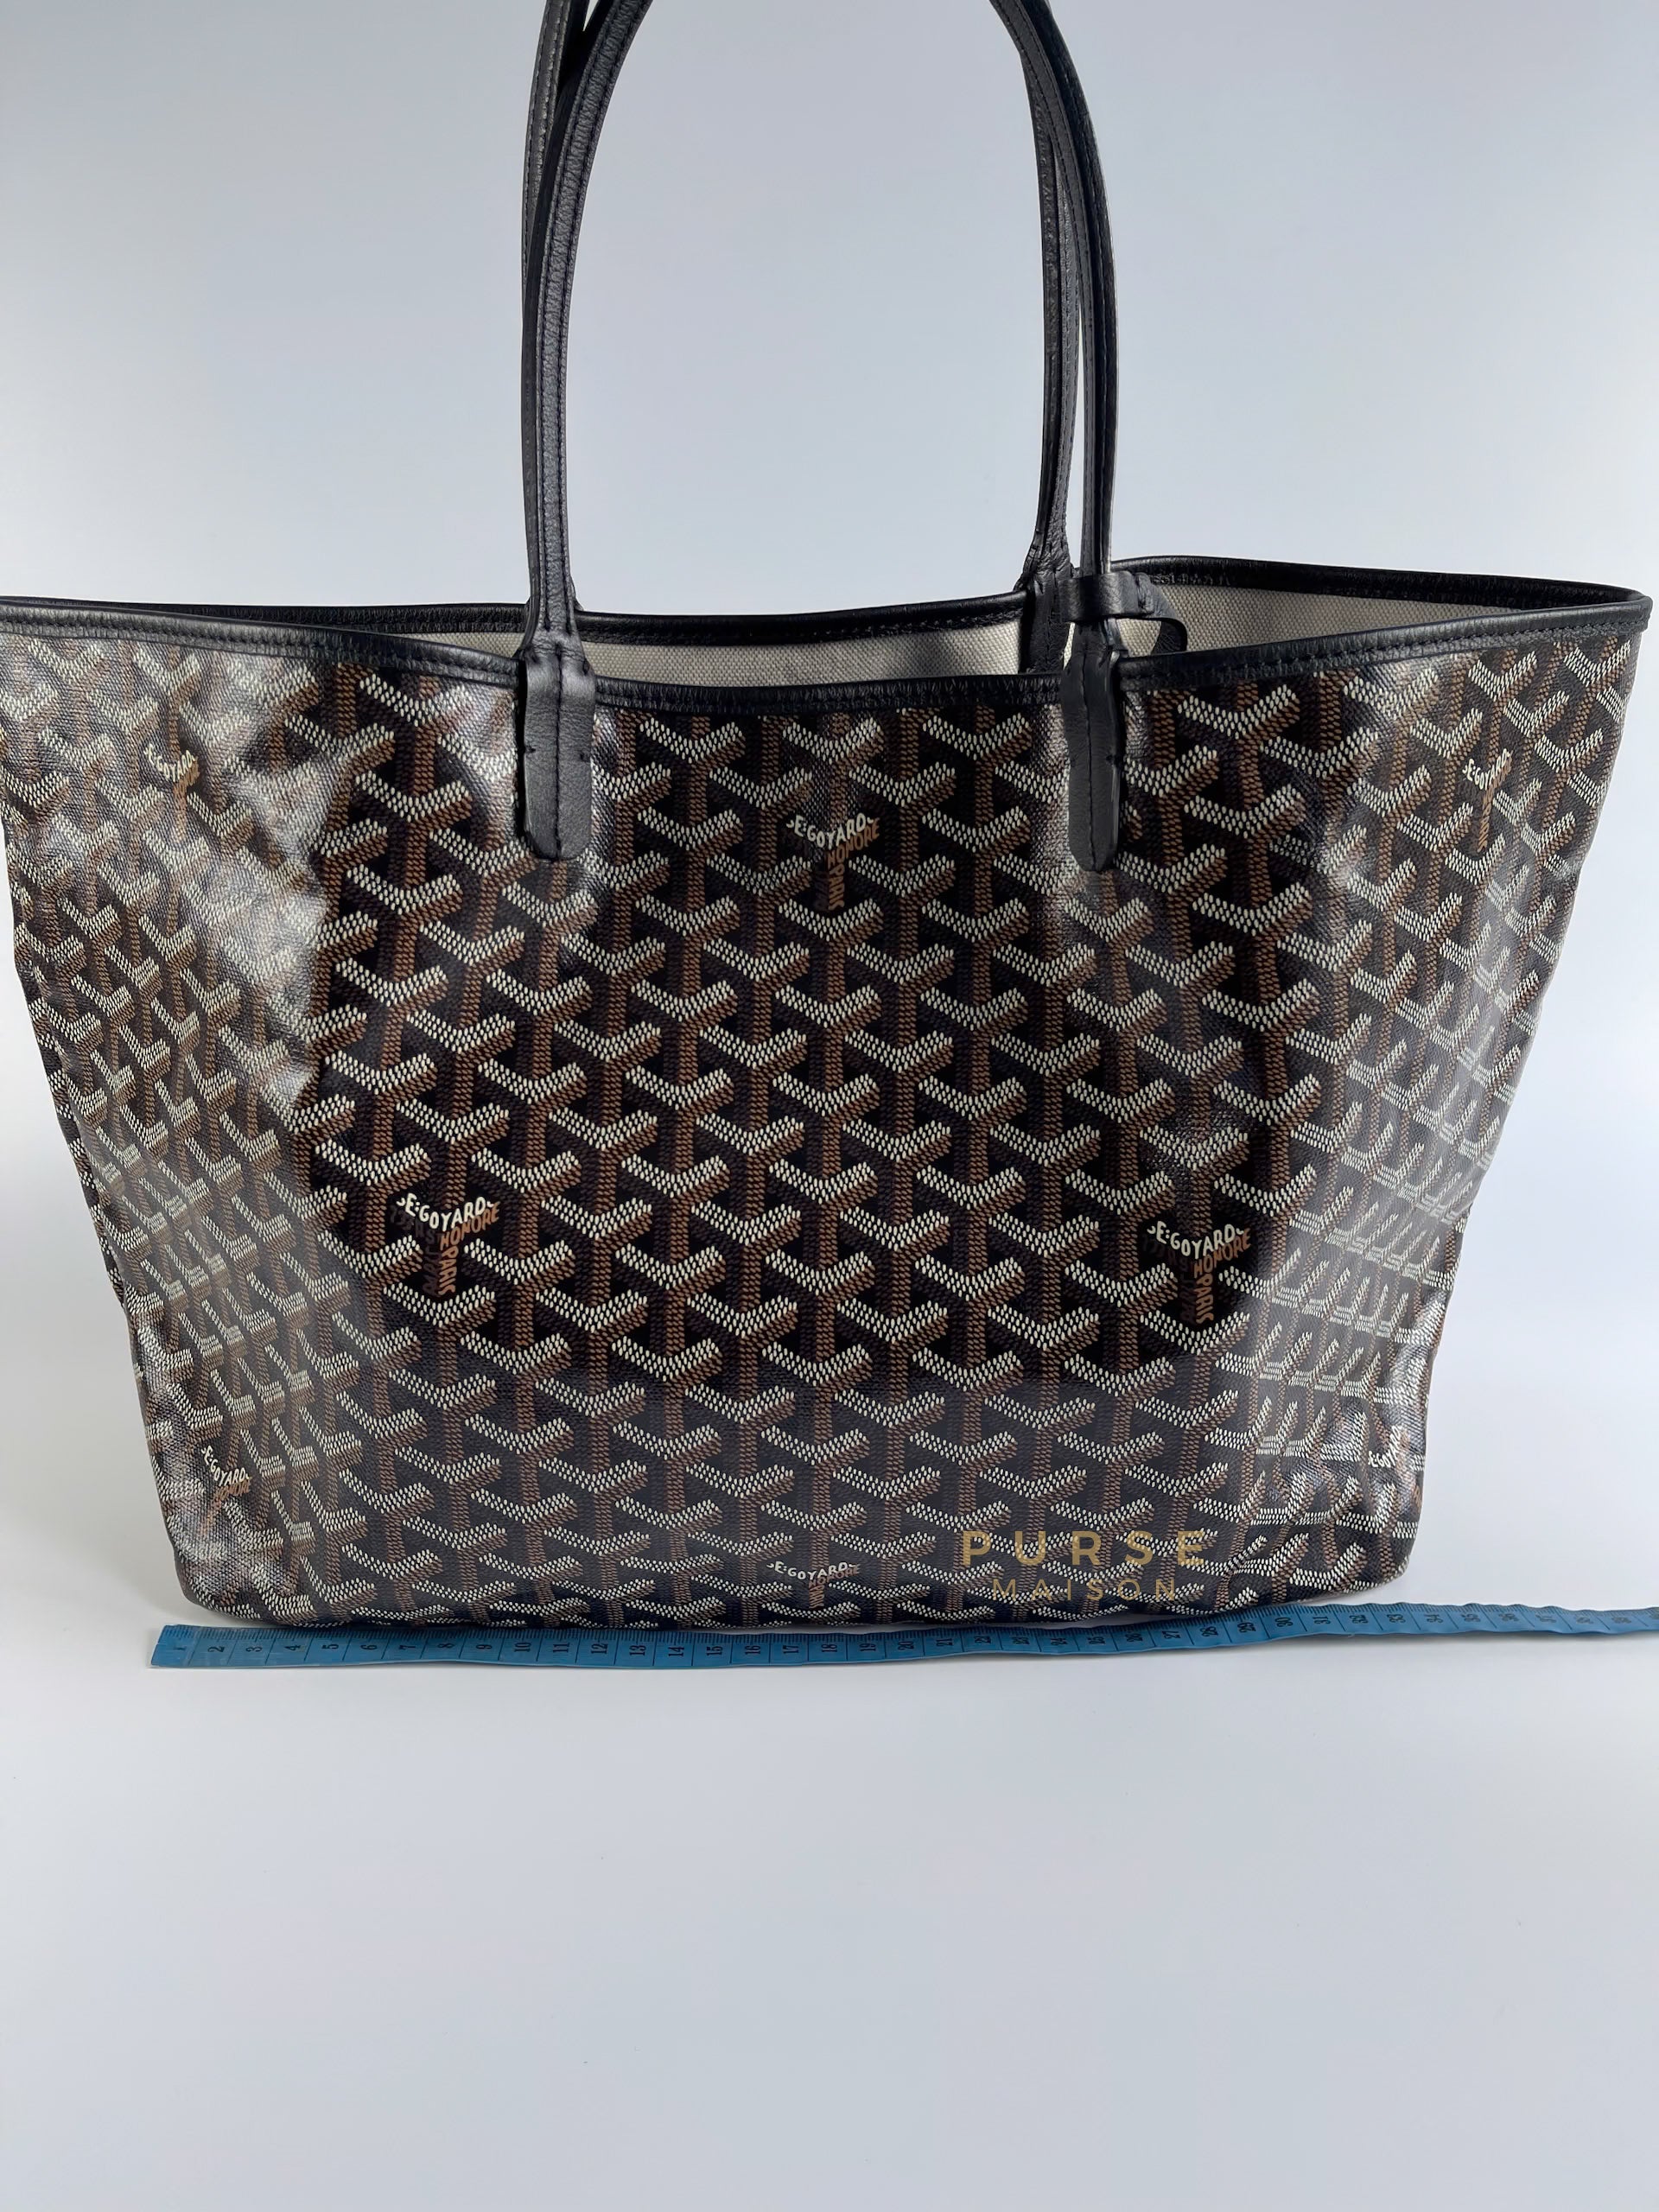 Saint Louis PM Noir Tote Bag (Black) | Purse Maison Luxury Bags Shop